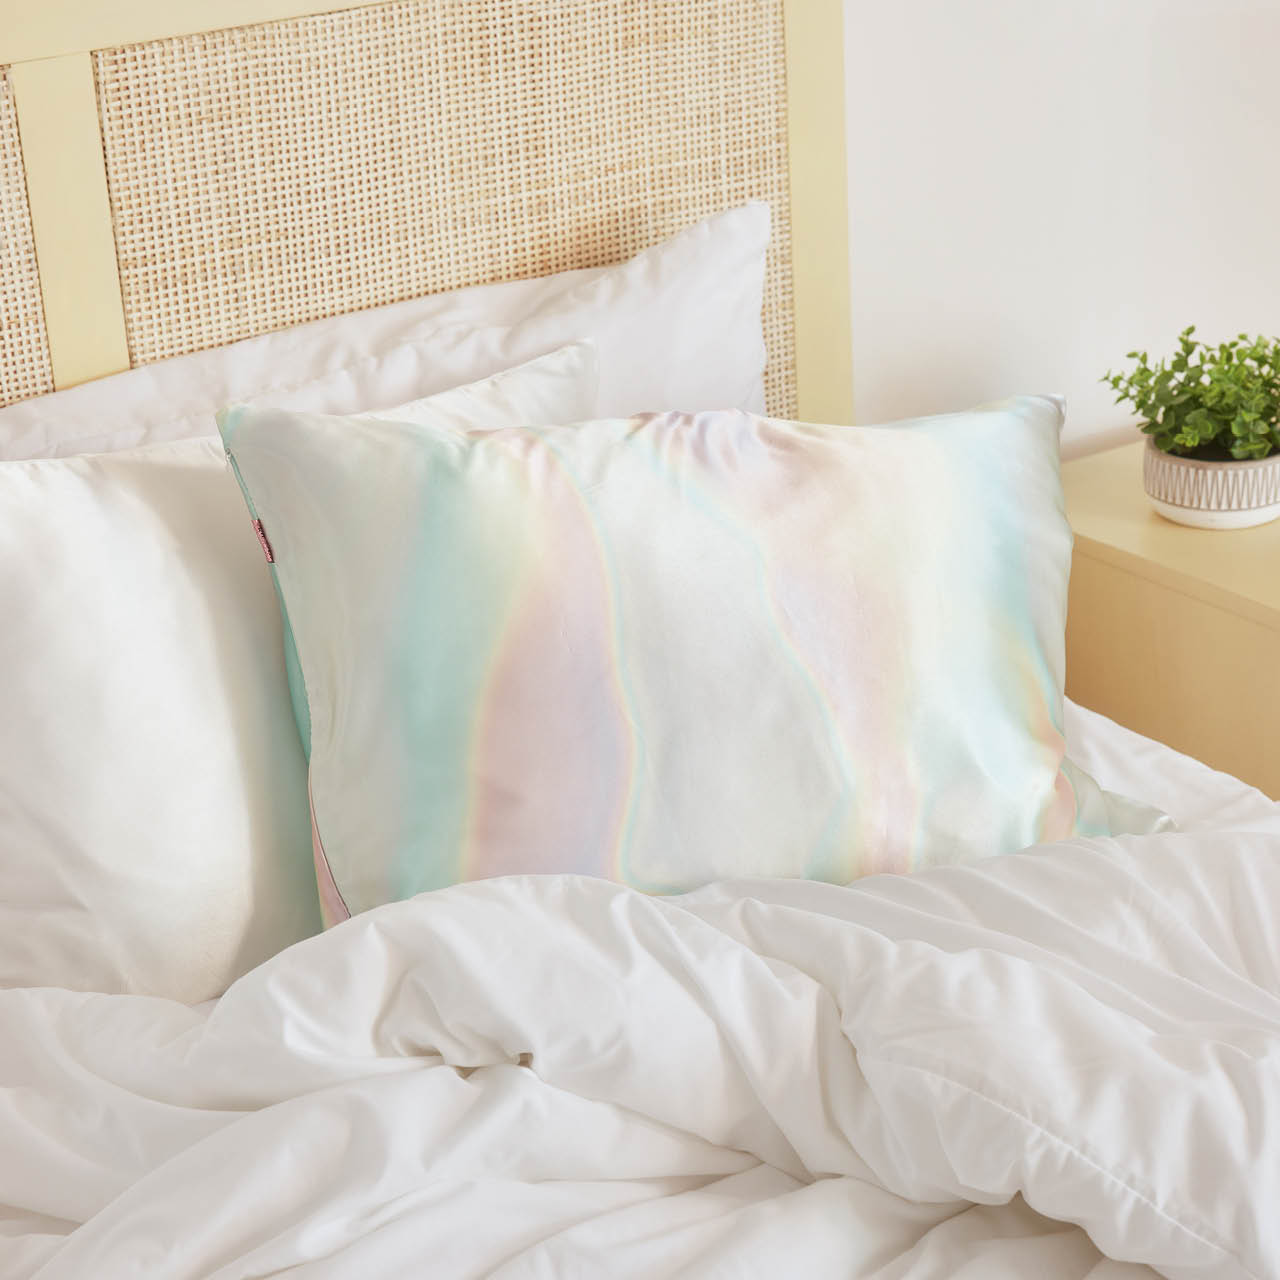 Kitsch Satin Pillowcase - Aura (standard)